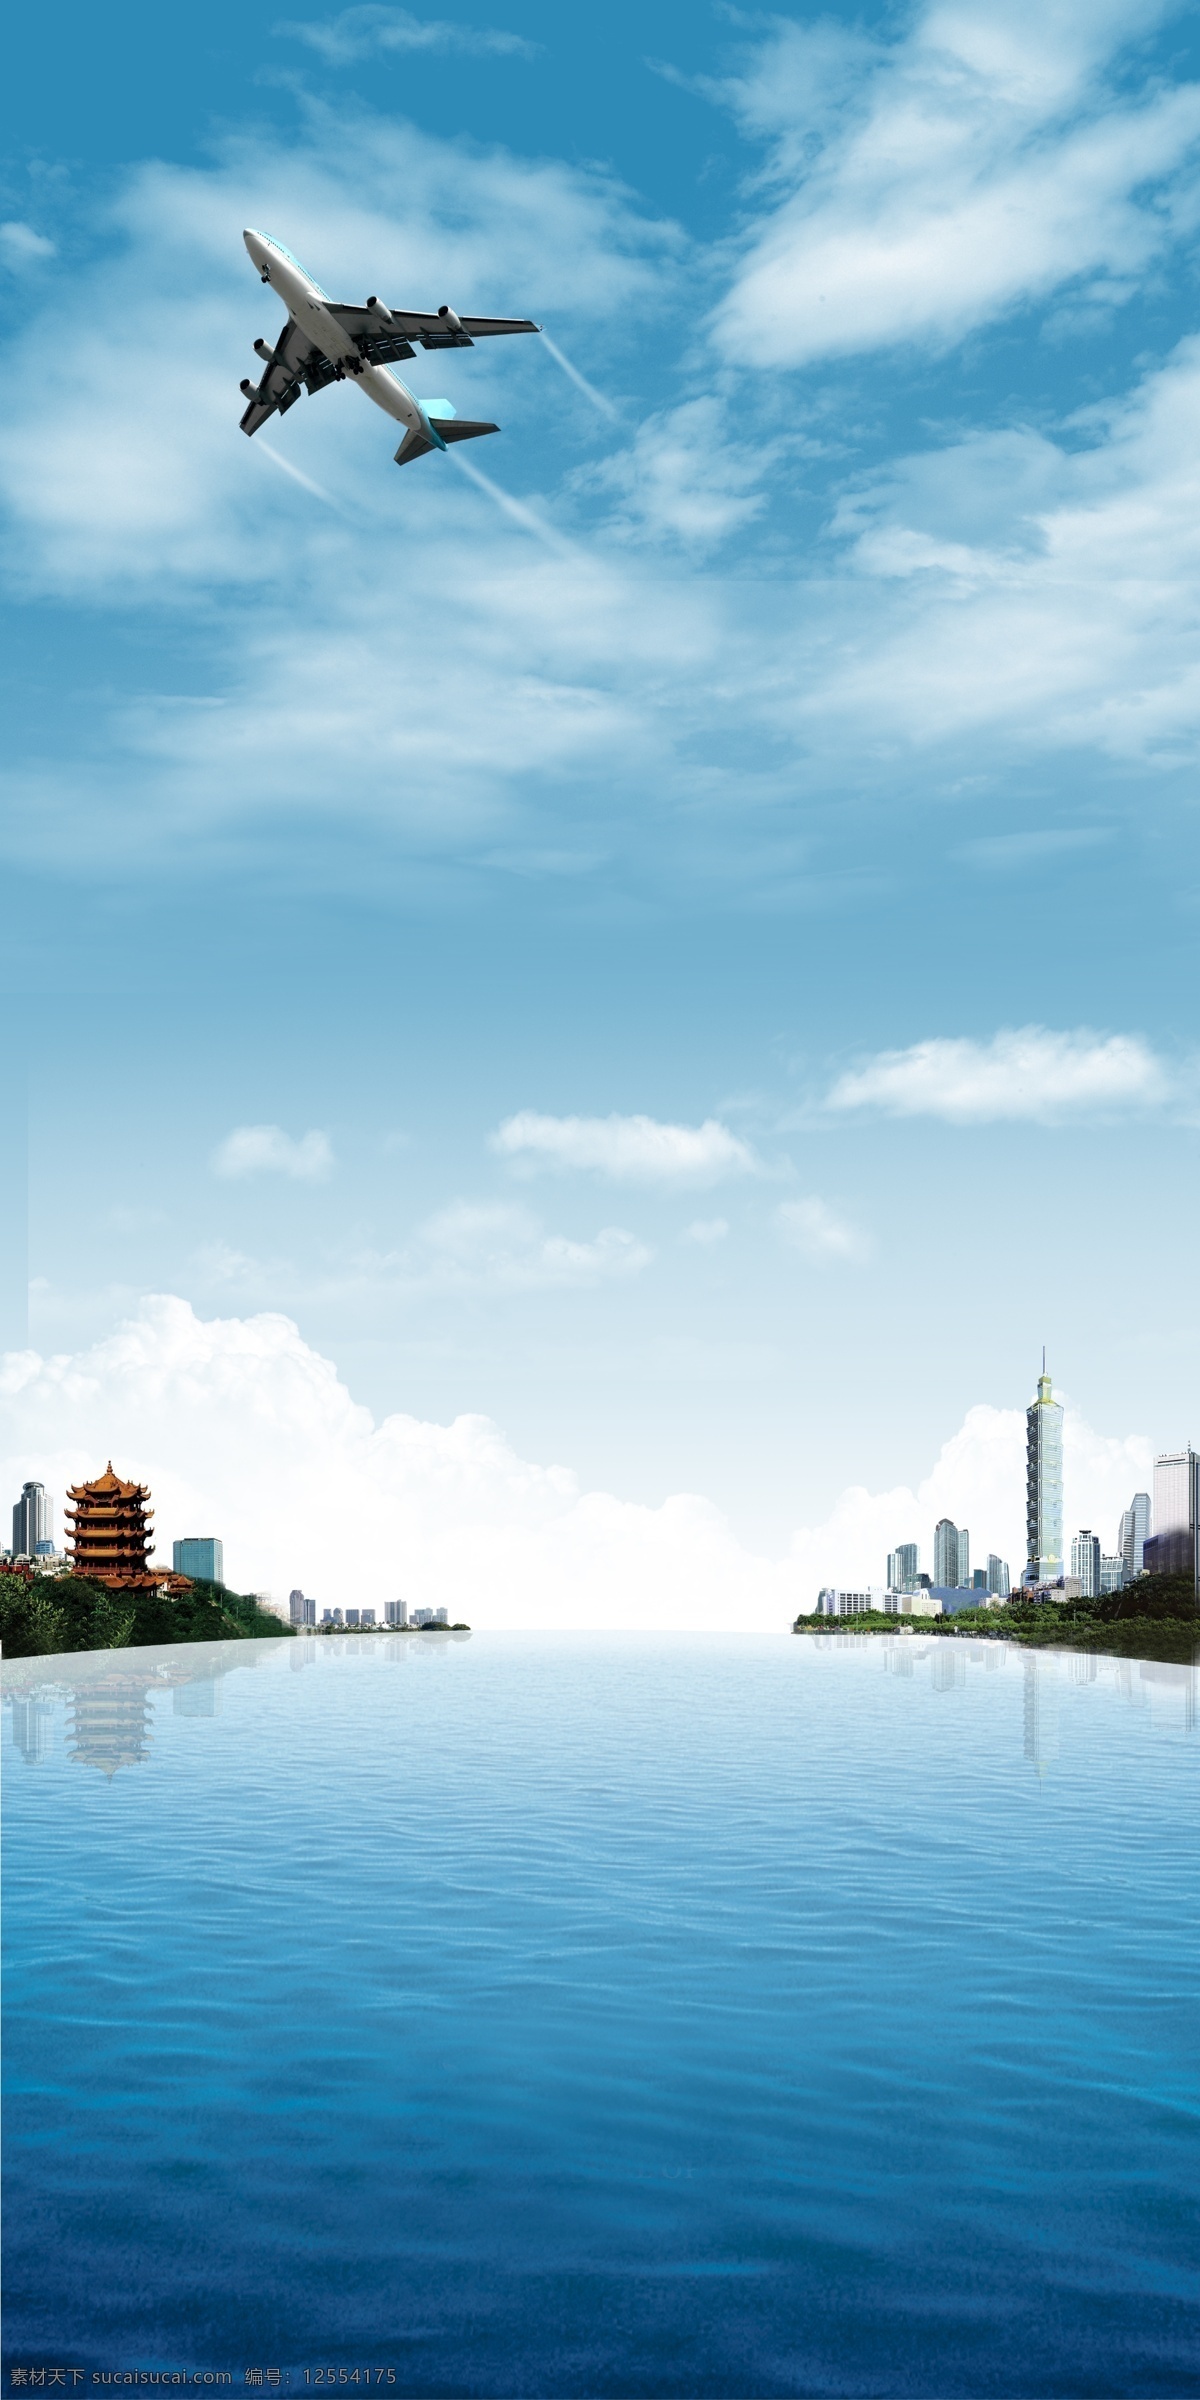 海峡两岸合成 海峡两岸 大海 台湾 大陆 黄鹤楼 天空 广告设计模板 源文件